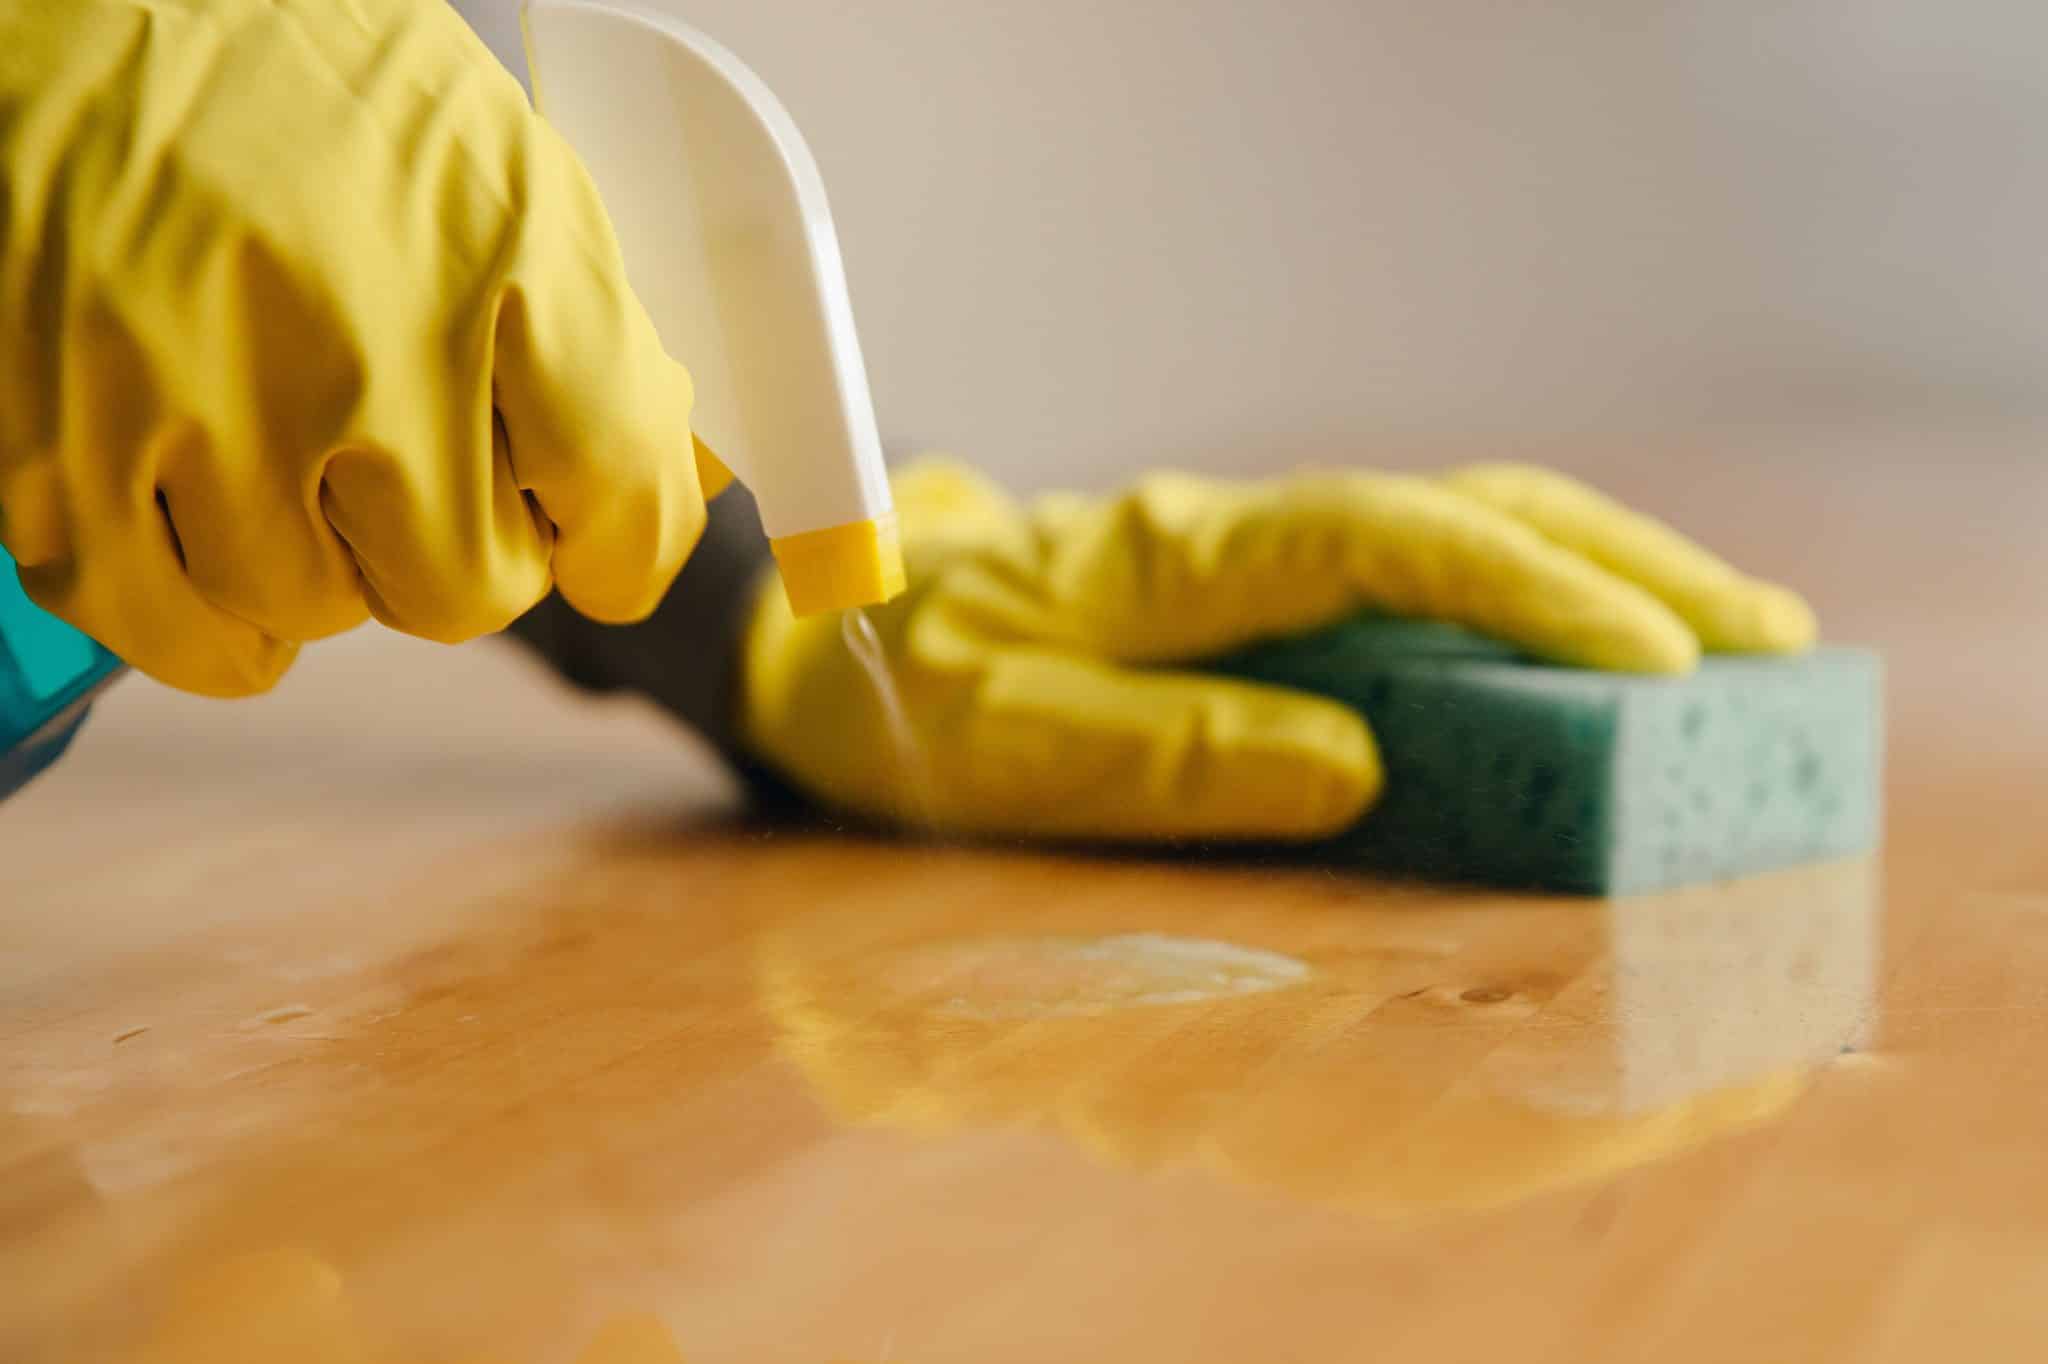 Un spray nettoyant dans la main droite et une éponge dans l'autre pour nettoyer une surface en bois.